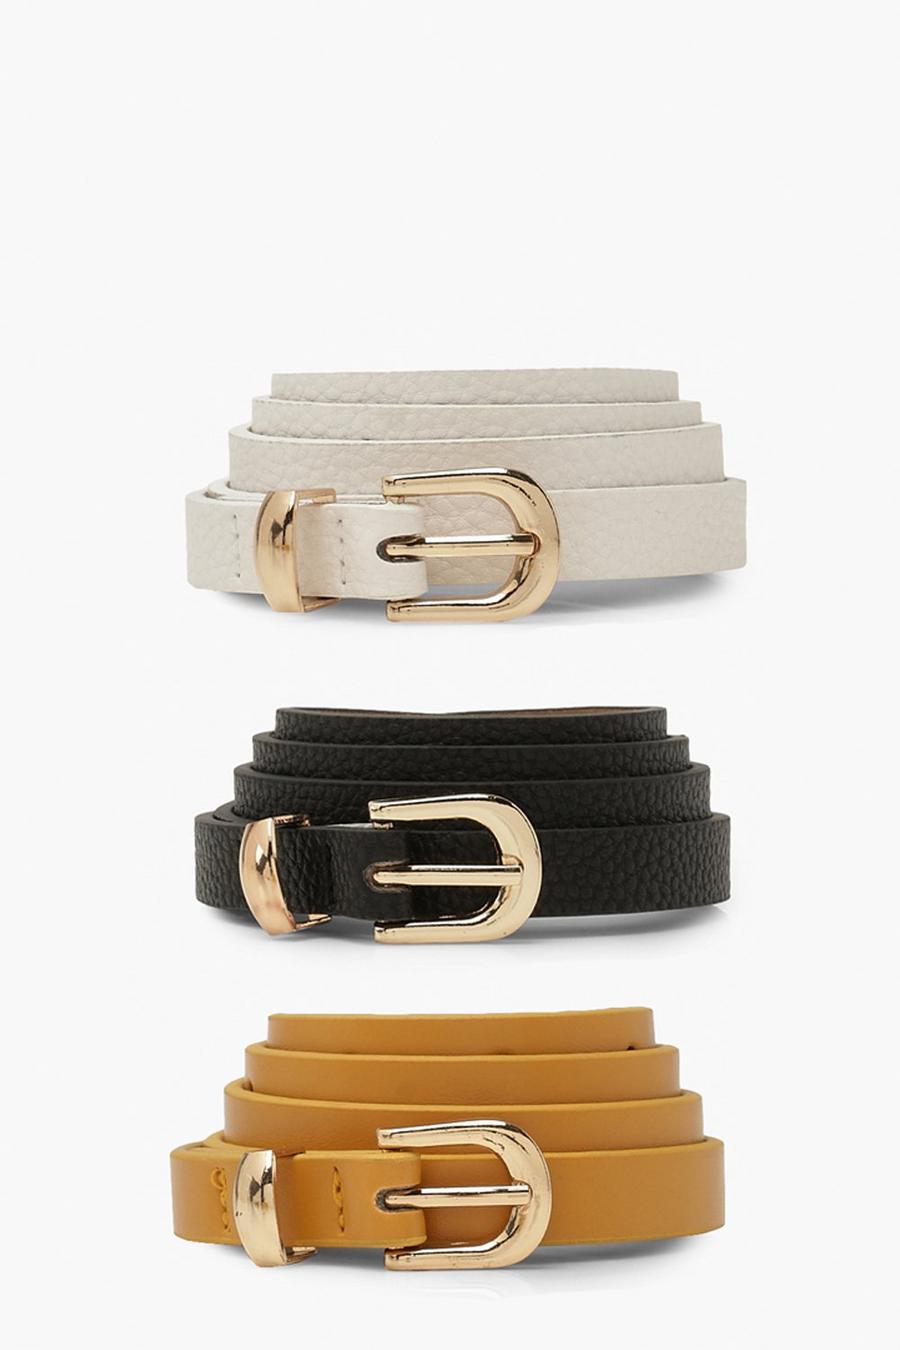 Cinturones | Cinturones para modelos de piel para cintura cadera